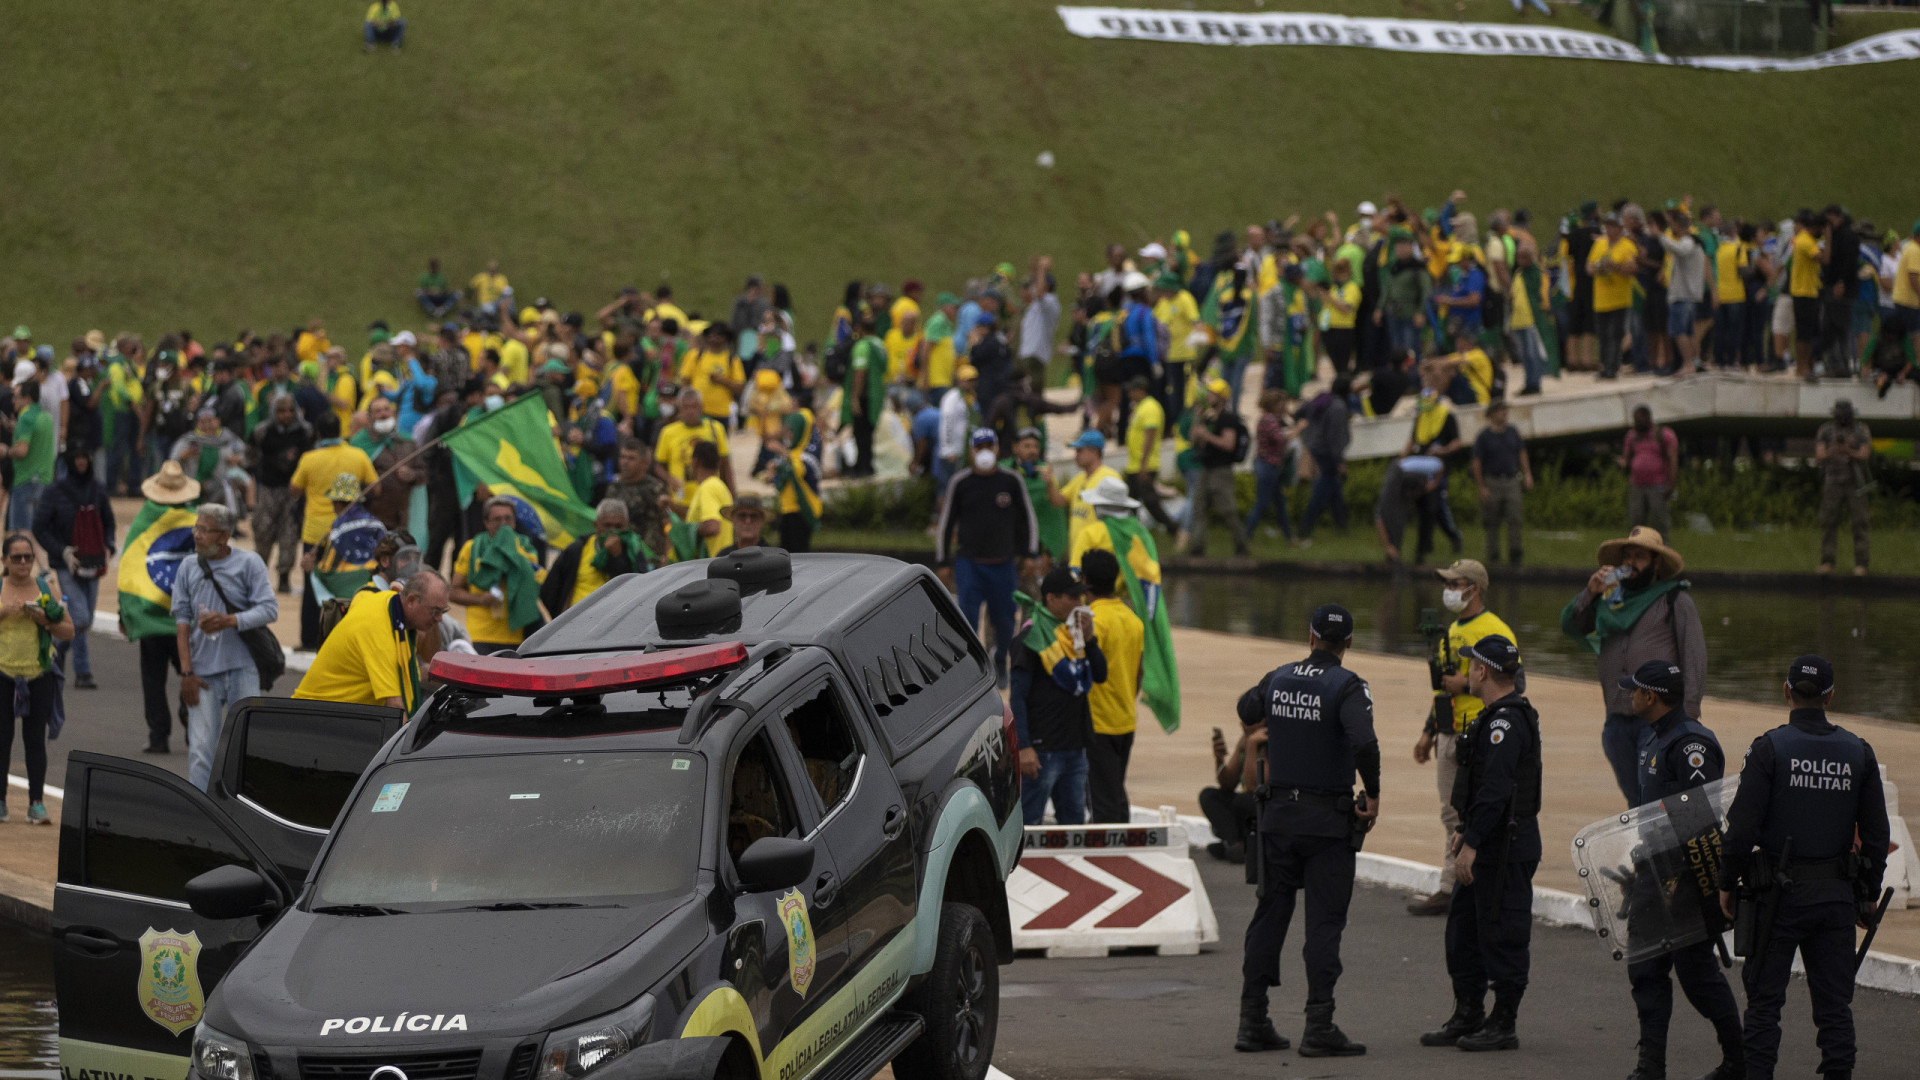 Imagens mostram ação de golpistas e destruição após invasão em Brasília